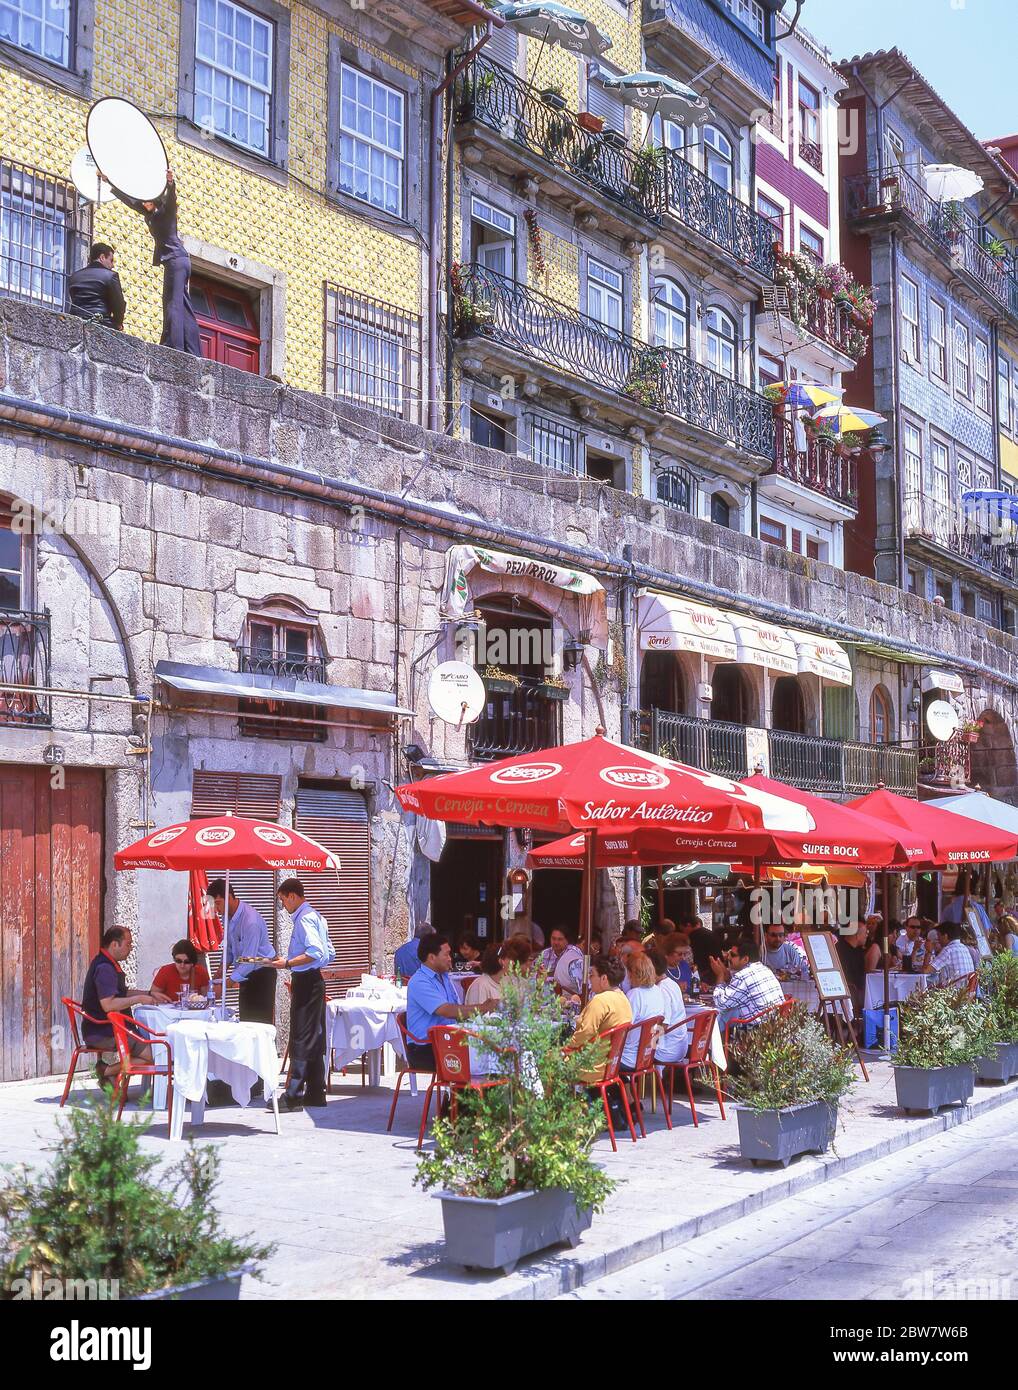 Restaurants en bord de rivière, Cais da Ribeira, quartier de Ribeira, Porto (Porto), région Norte, Portugal Banque D'Images